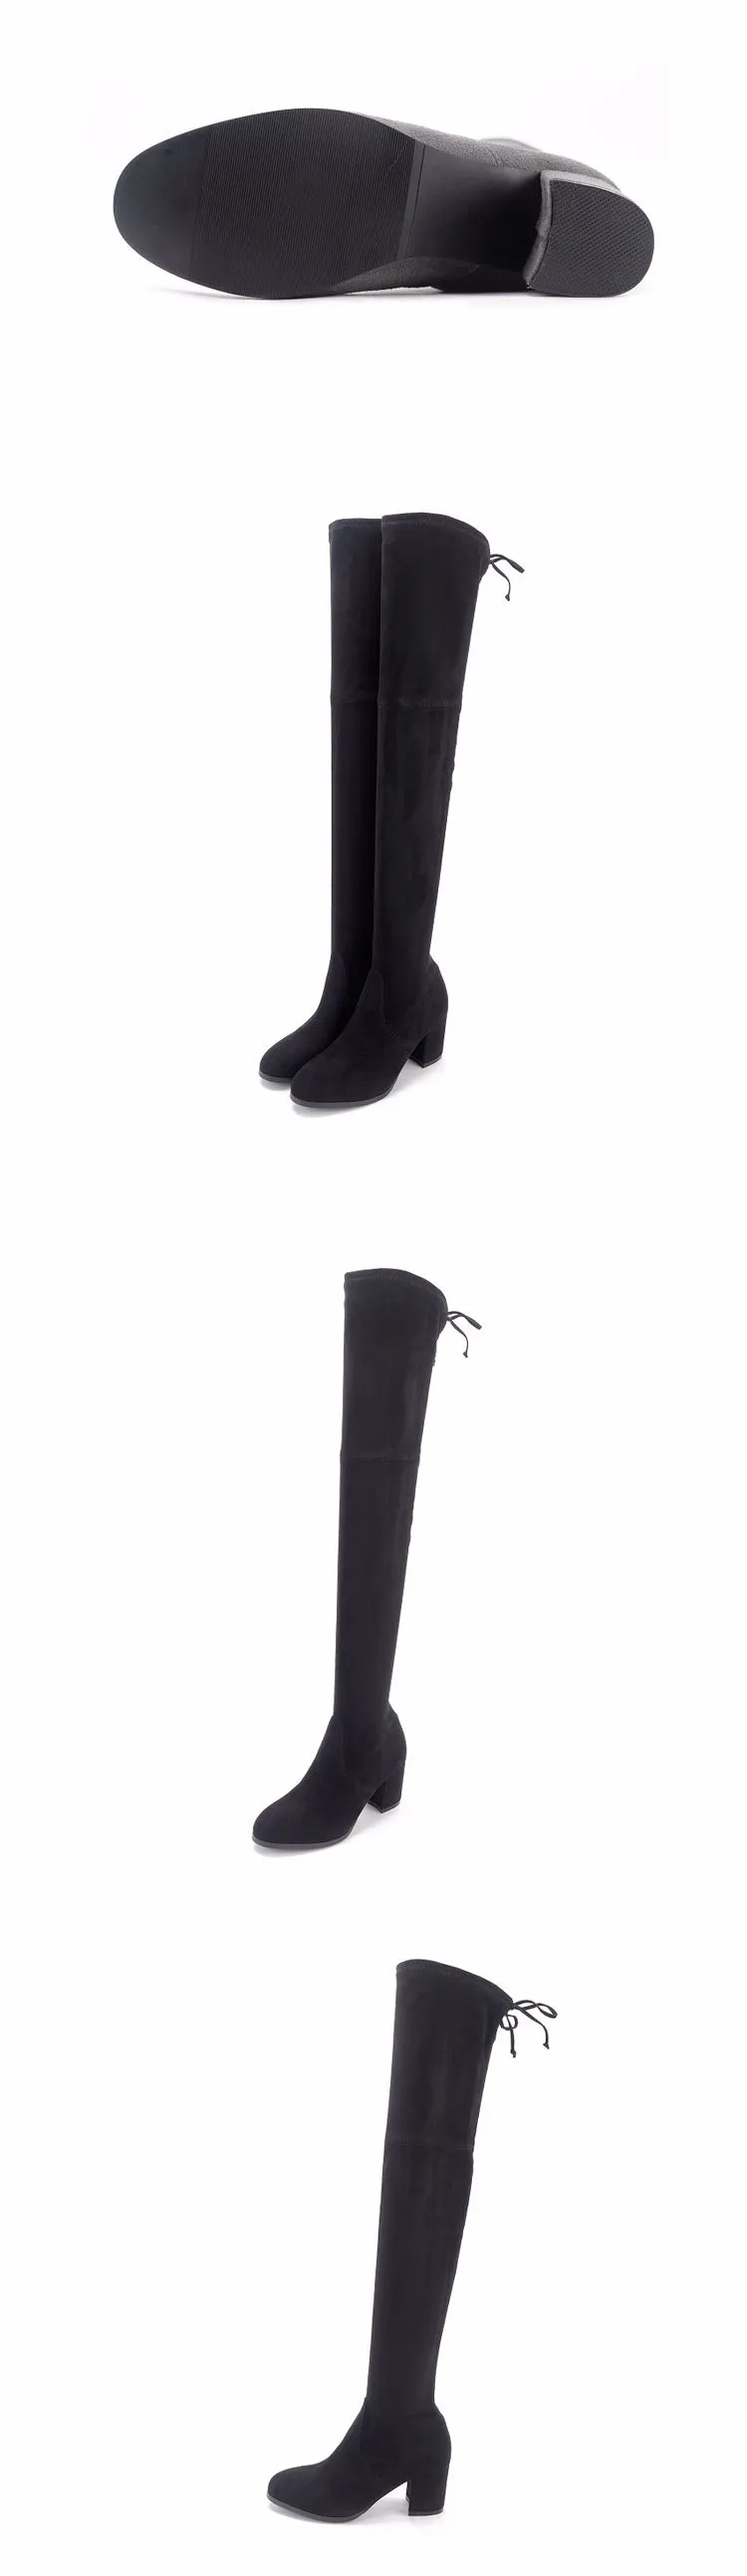 Goxpacer новых осенью и зимой Привлекательные женские ботинки; модные ботинки на высоком каблуке круглый носок тонкий зимняя обувь ботинки с высоким голенищем женская обувь